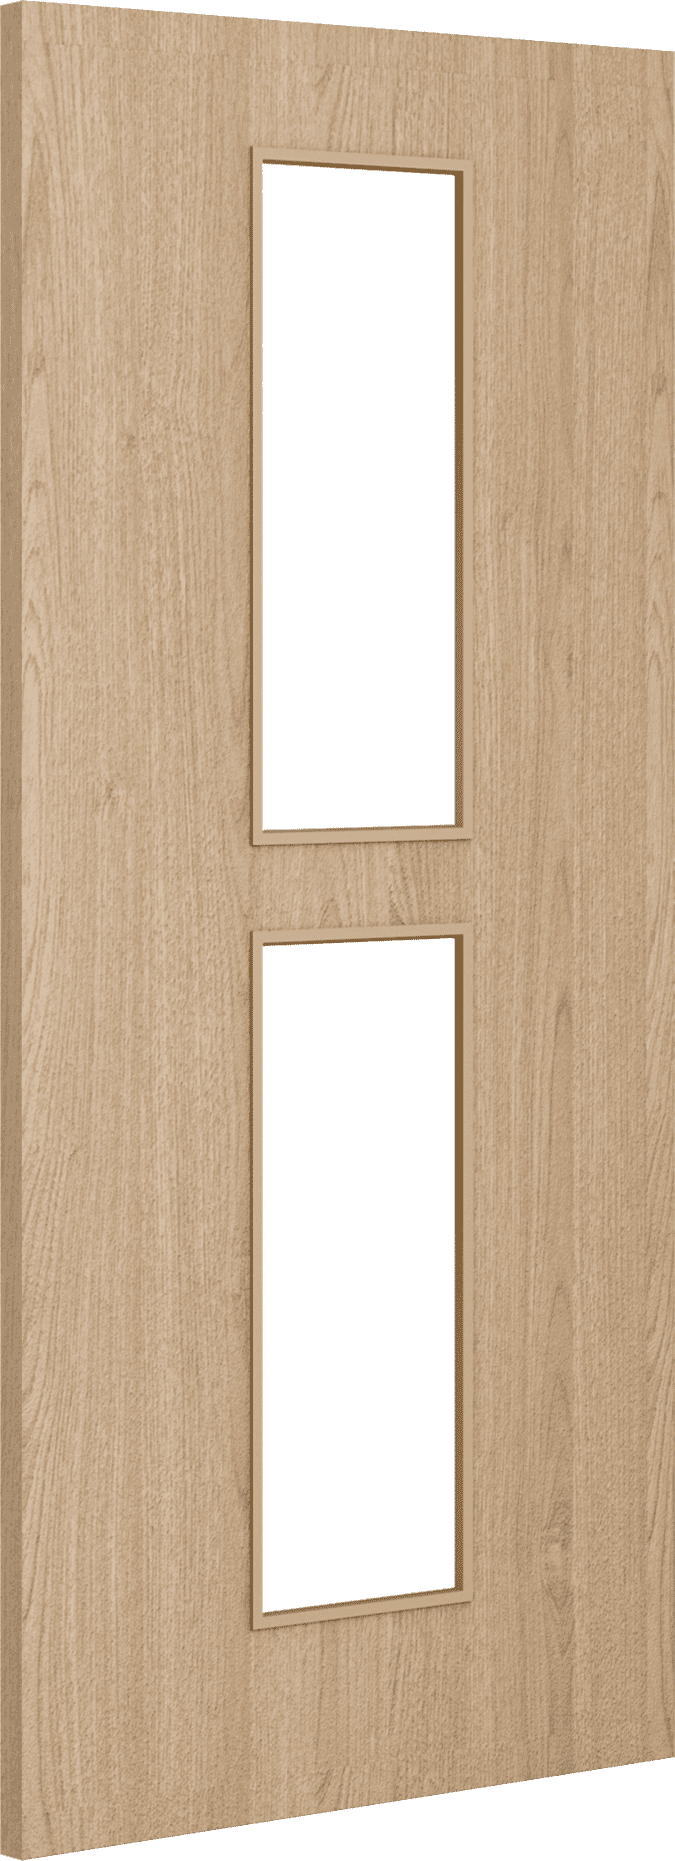 2040mm x 926mm x 54mm Architectural Oak 12 Clear Glazed - Prefinished FD60 Fire Door Blank